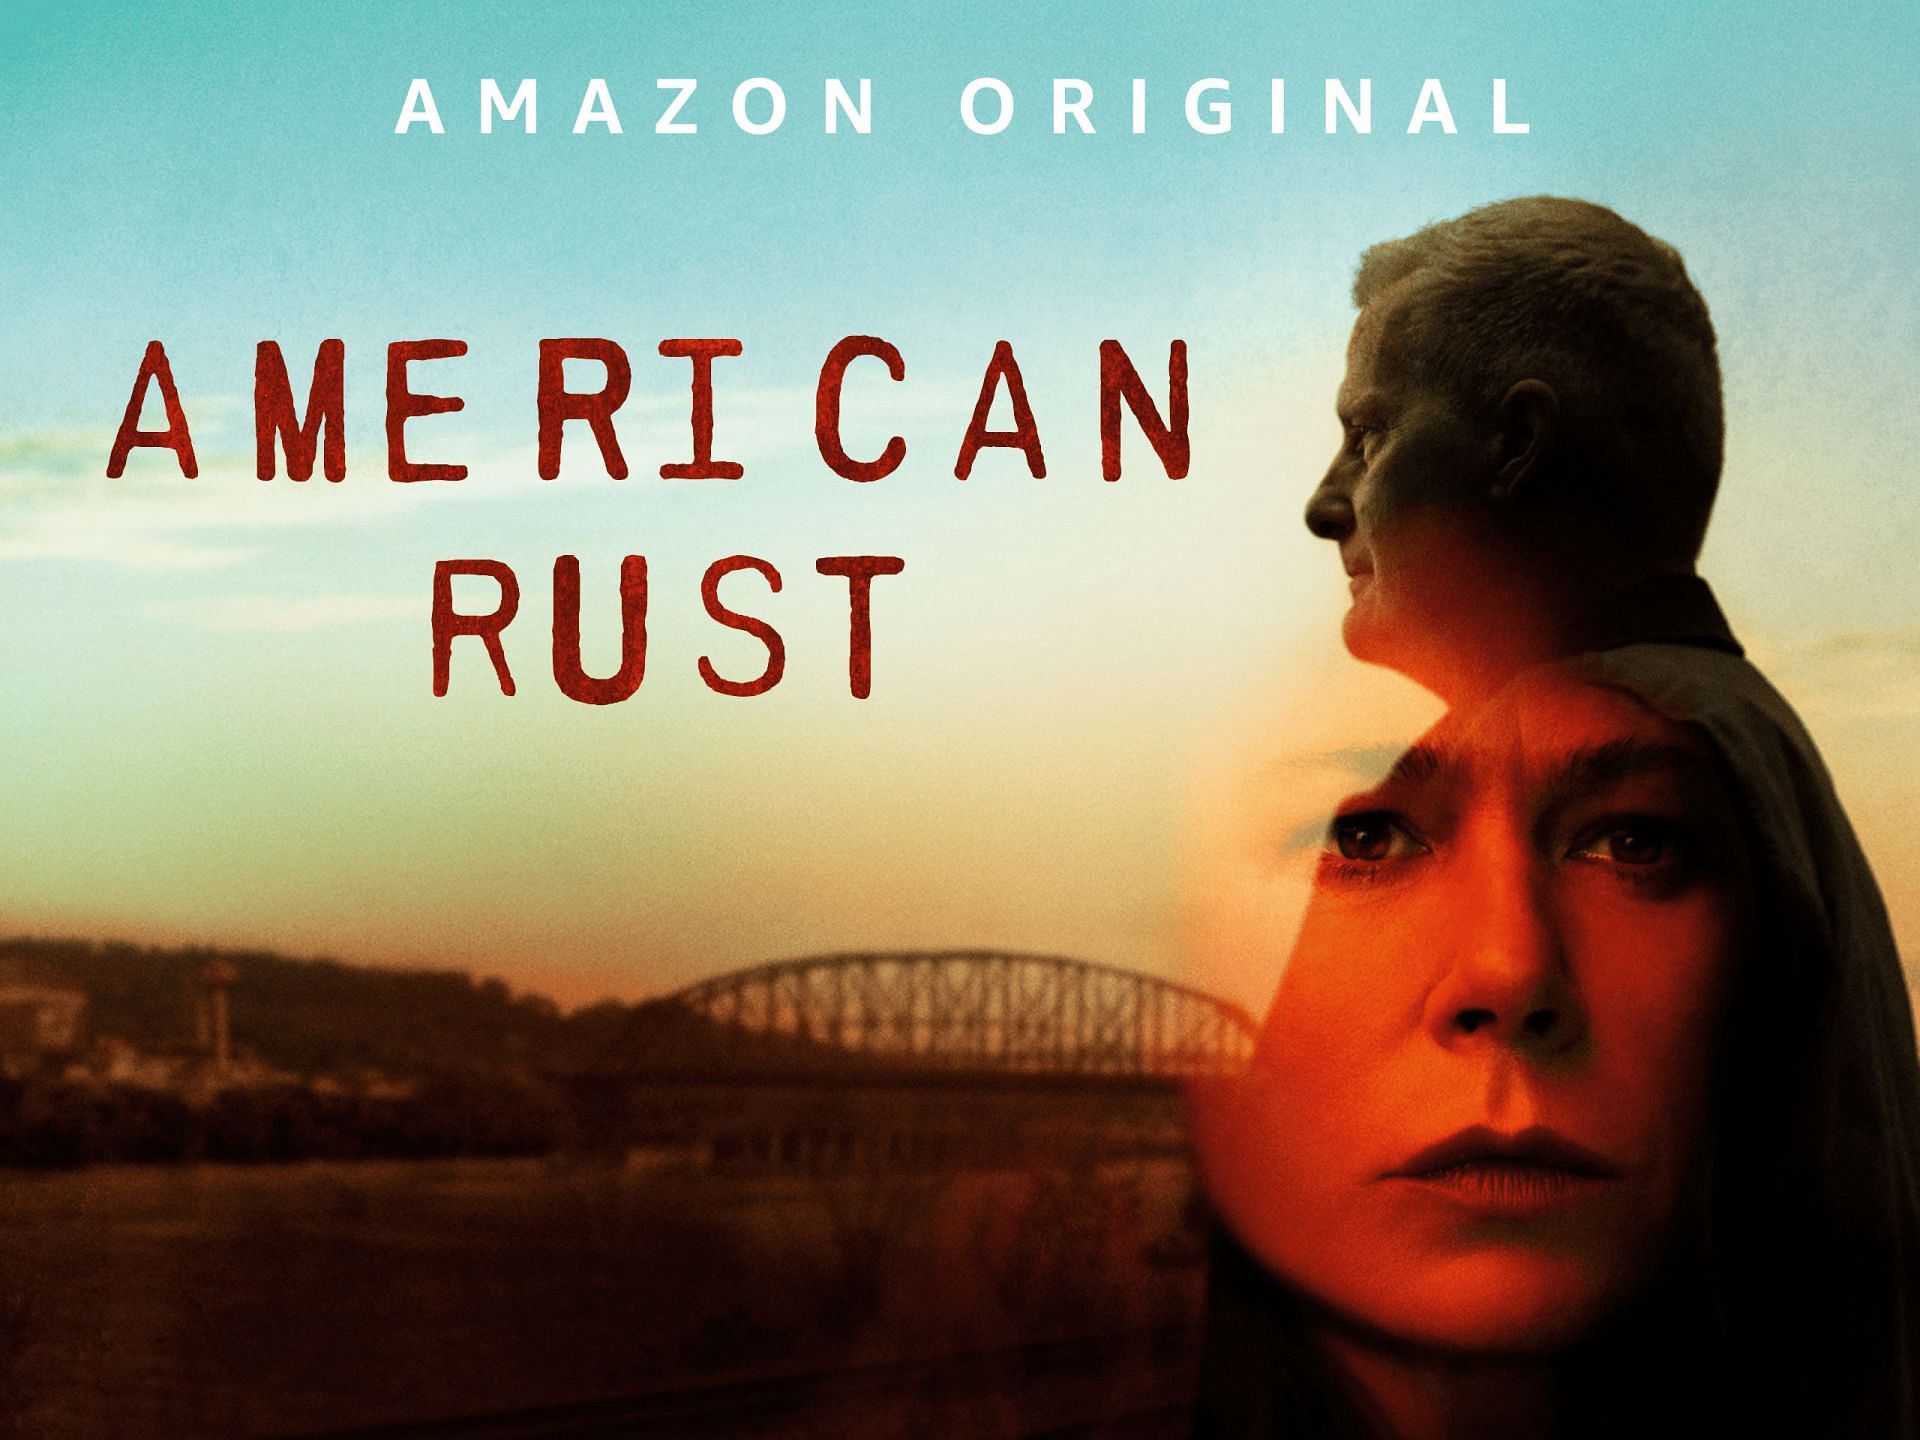 American Rust Season 2